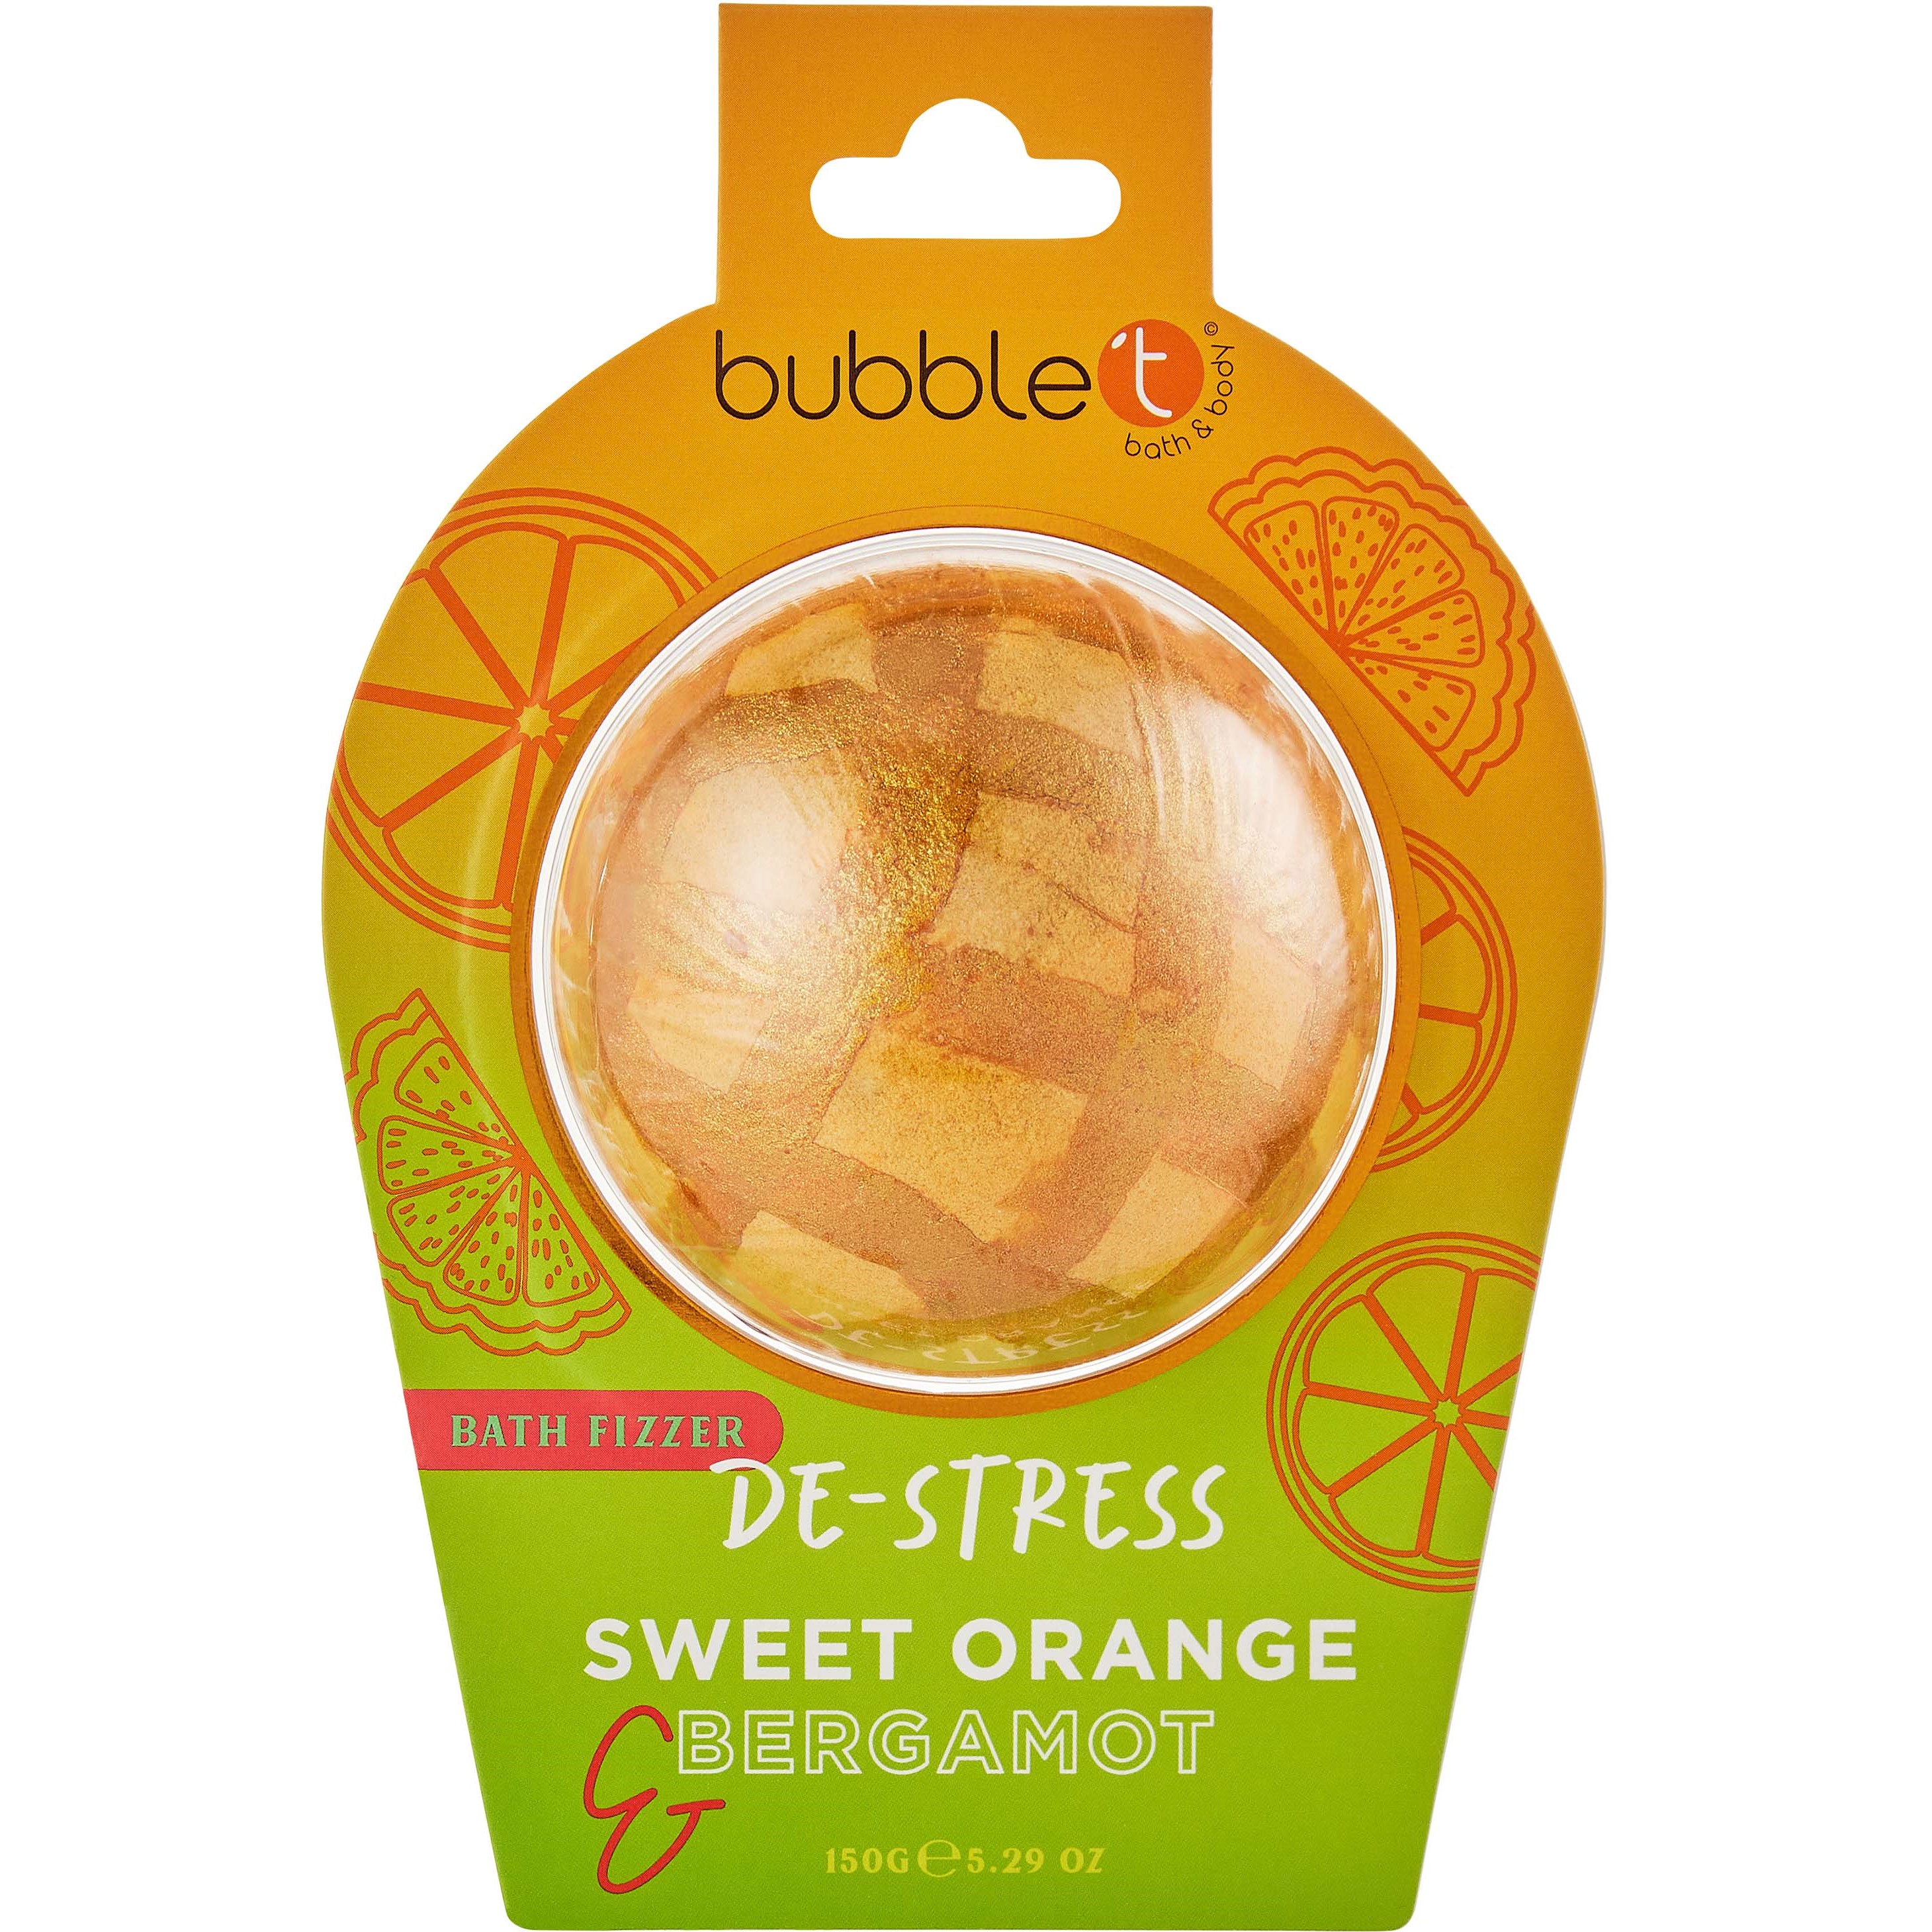 Bilde av Bubblet Bath Fizzer De-stress Sweet Orange & Bergamot